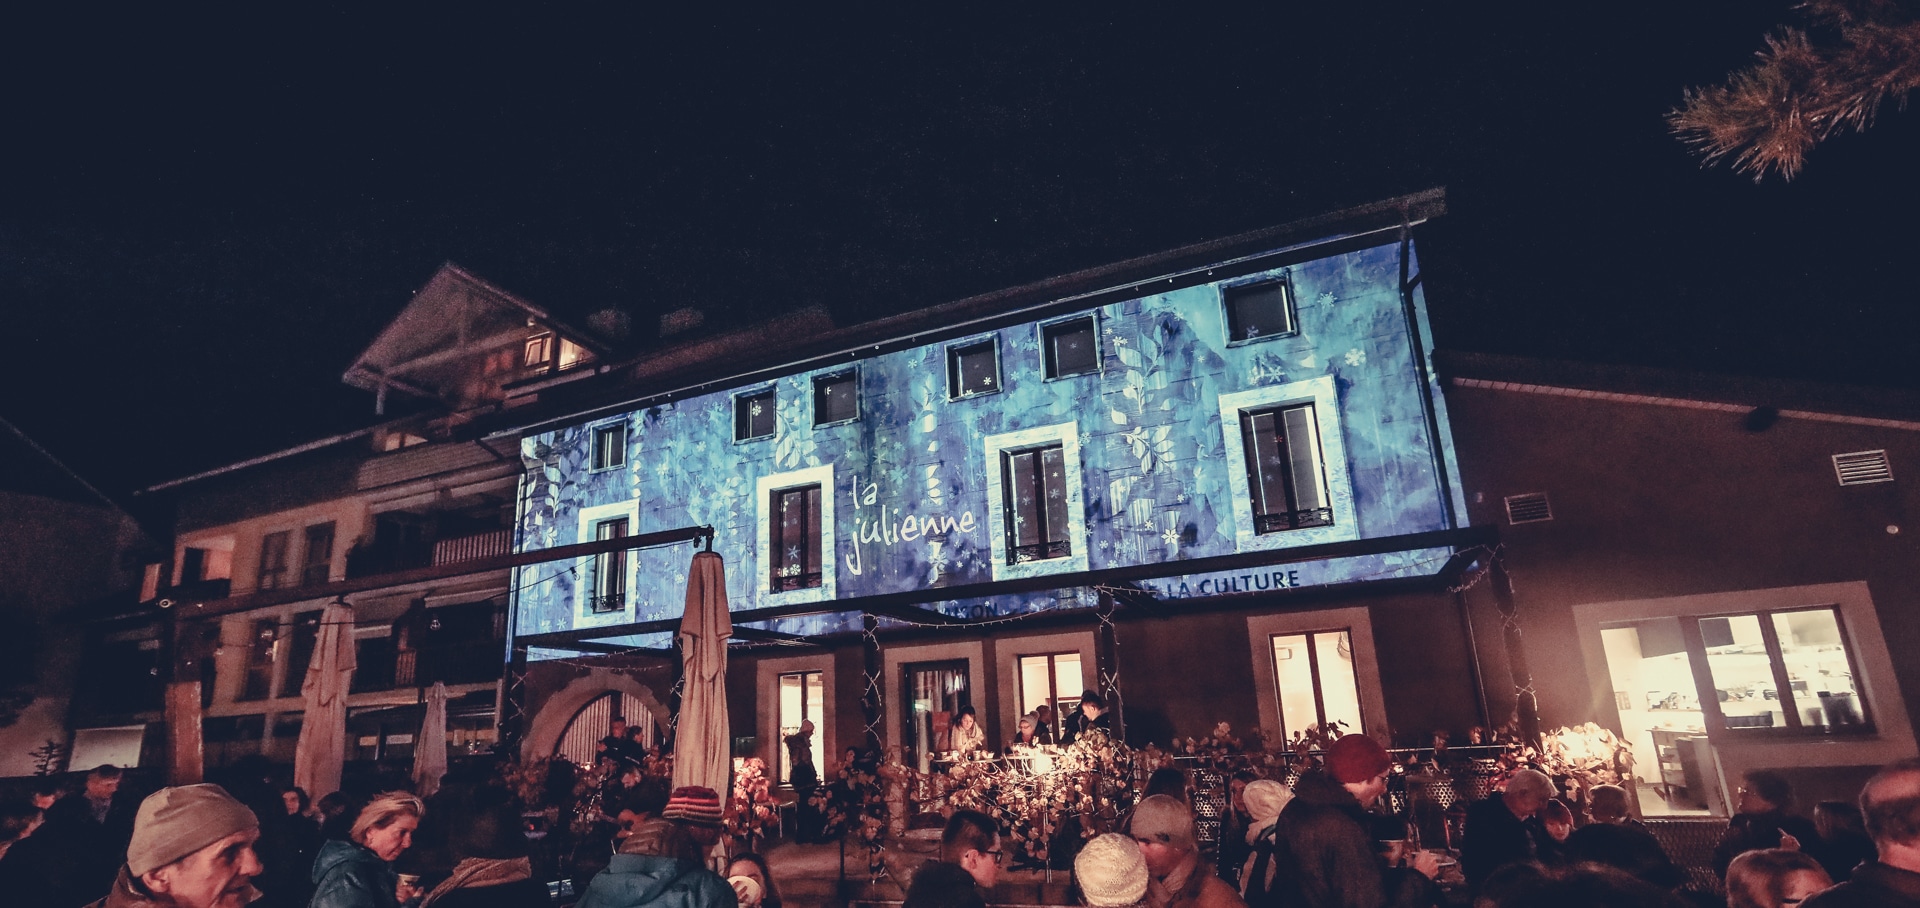 Mapping vidéo de "La julienne", café restaurant et maison des arts et de la culture de la commune de Plan-les-Ouates à Genève.